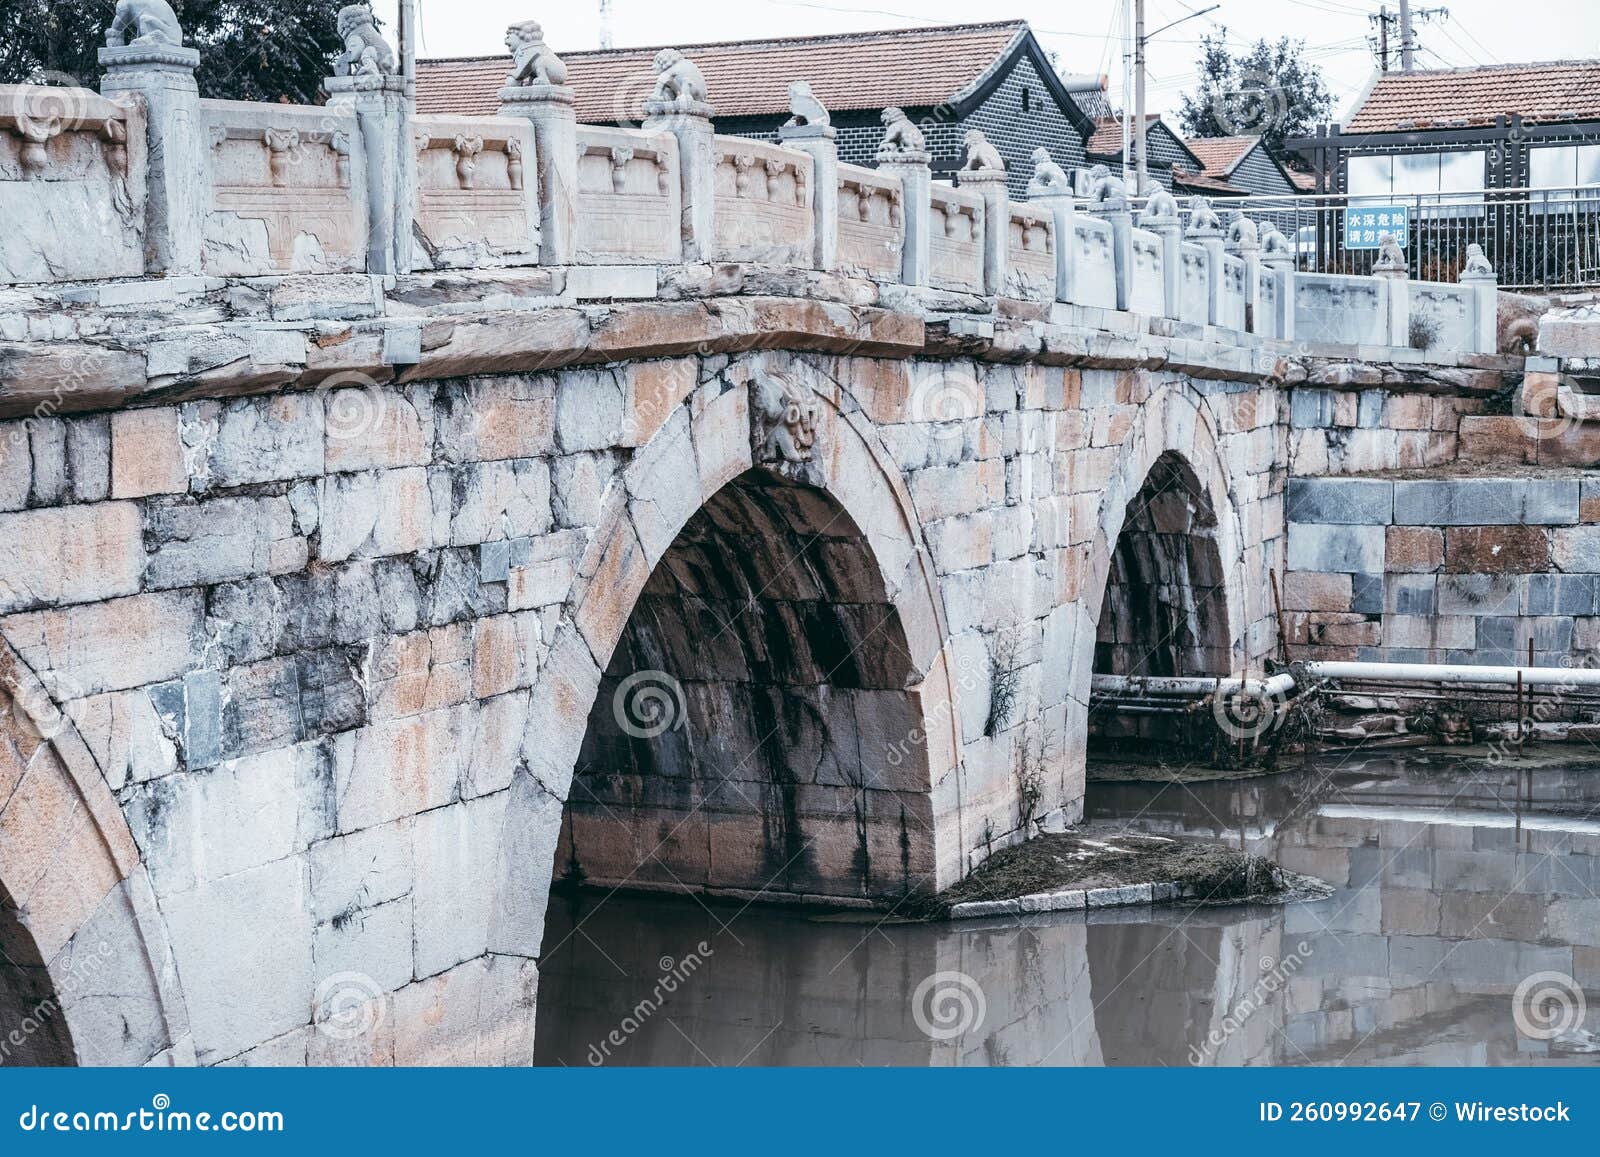 yuntong bridge crossing the xiao dowager river